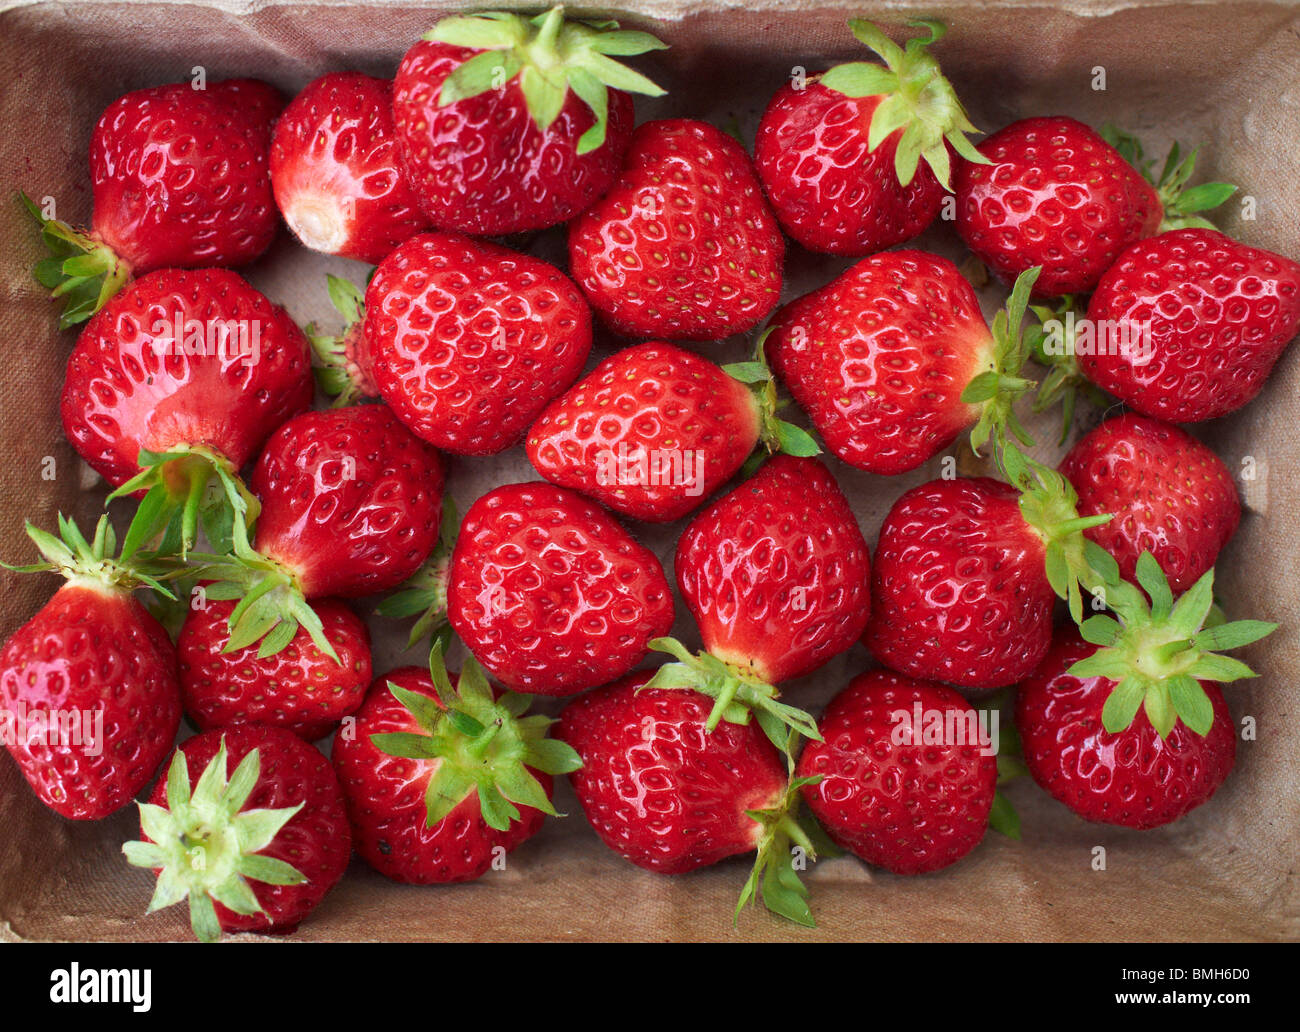 Punnett of Strawberries, UK Stock Photo